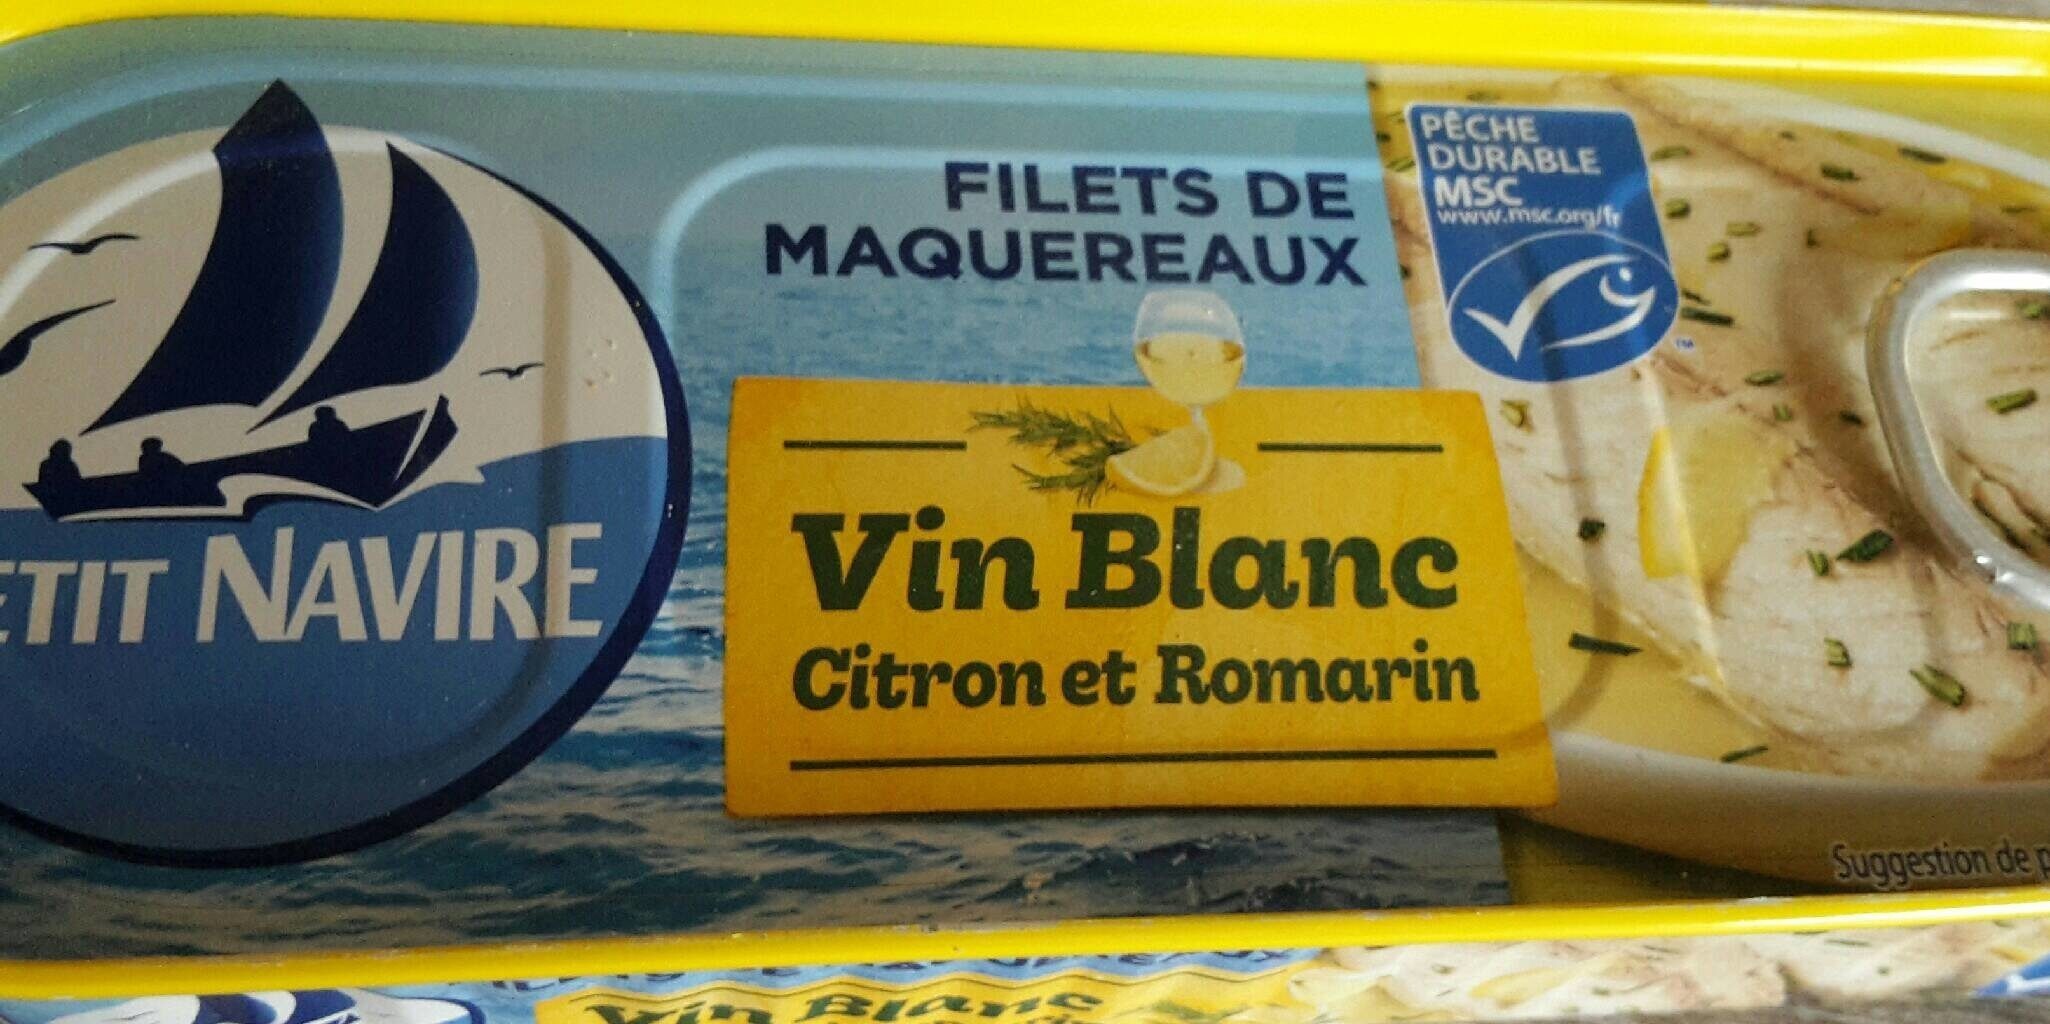 Filets de maquereaux vin blanc citron et romarin - Producto - fr